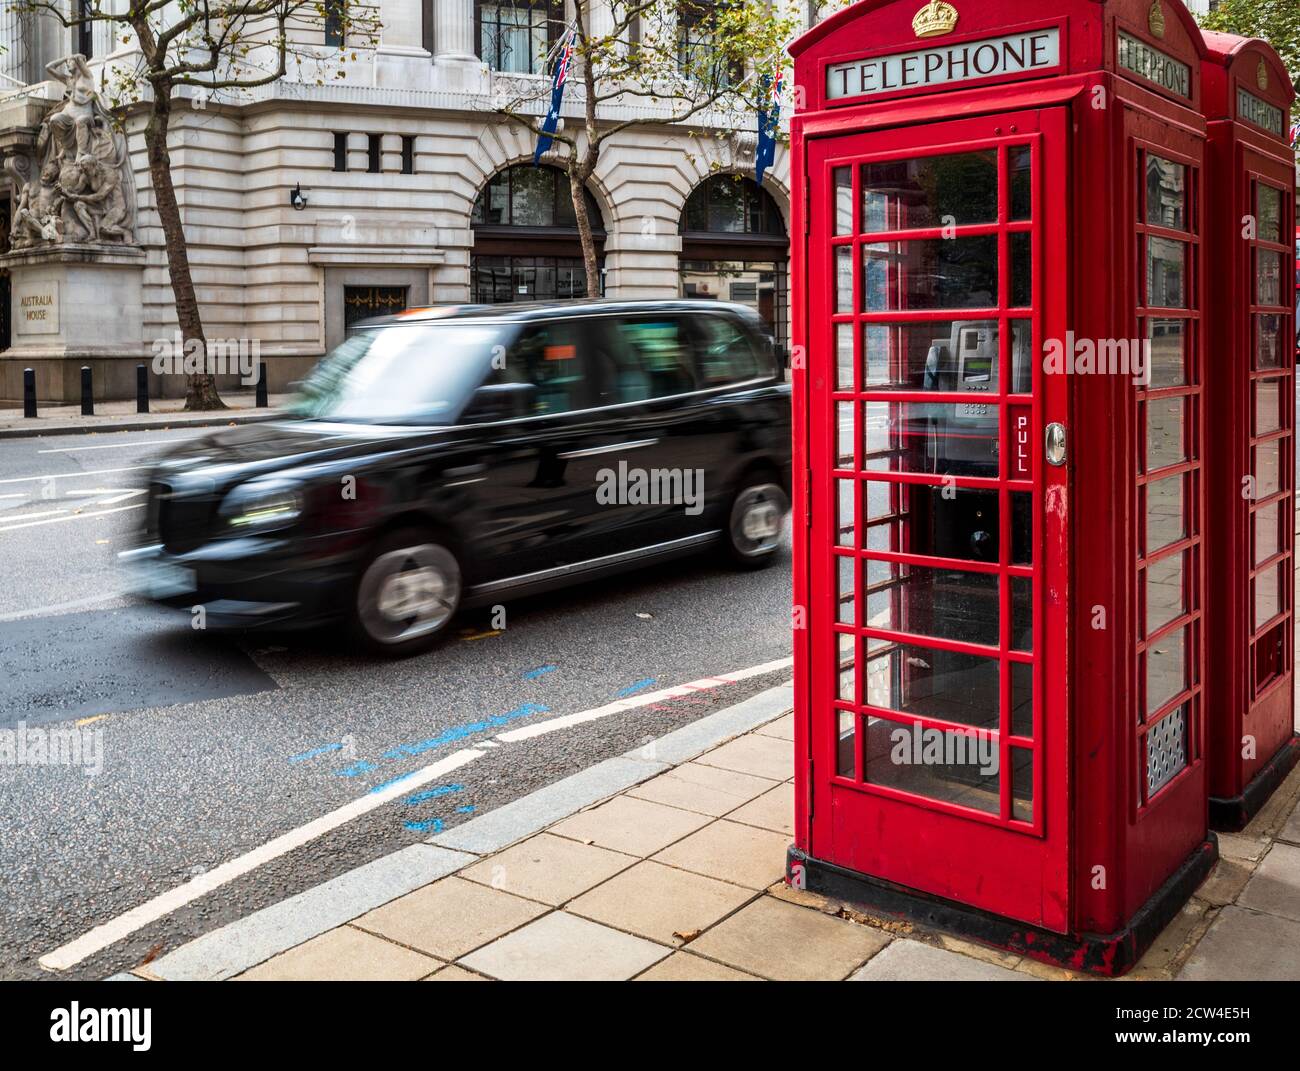 Ikonisches London - ein London Taxi fährt an zwei traditionellen roten Telefonzellen im Zentrum von London vorbei. Bewegungsunschärfe der Taxibewegung. London Tourism. Stockfoto